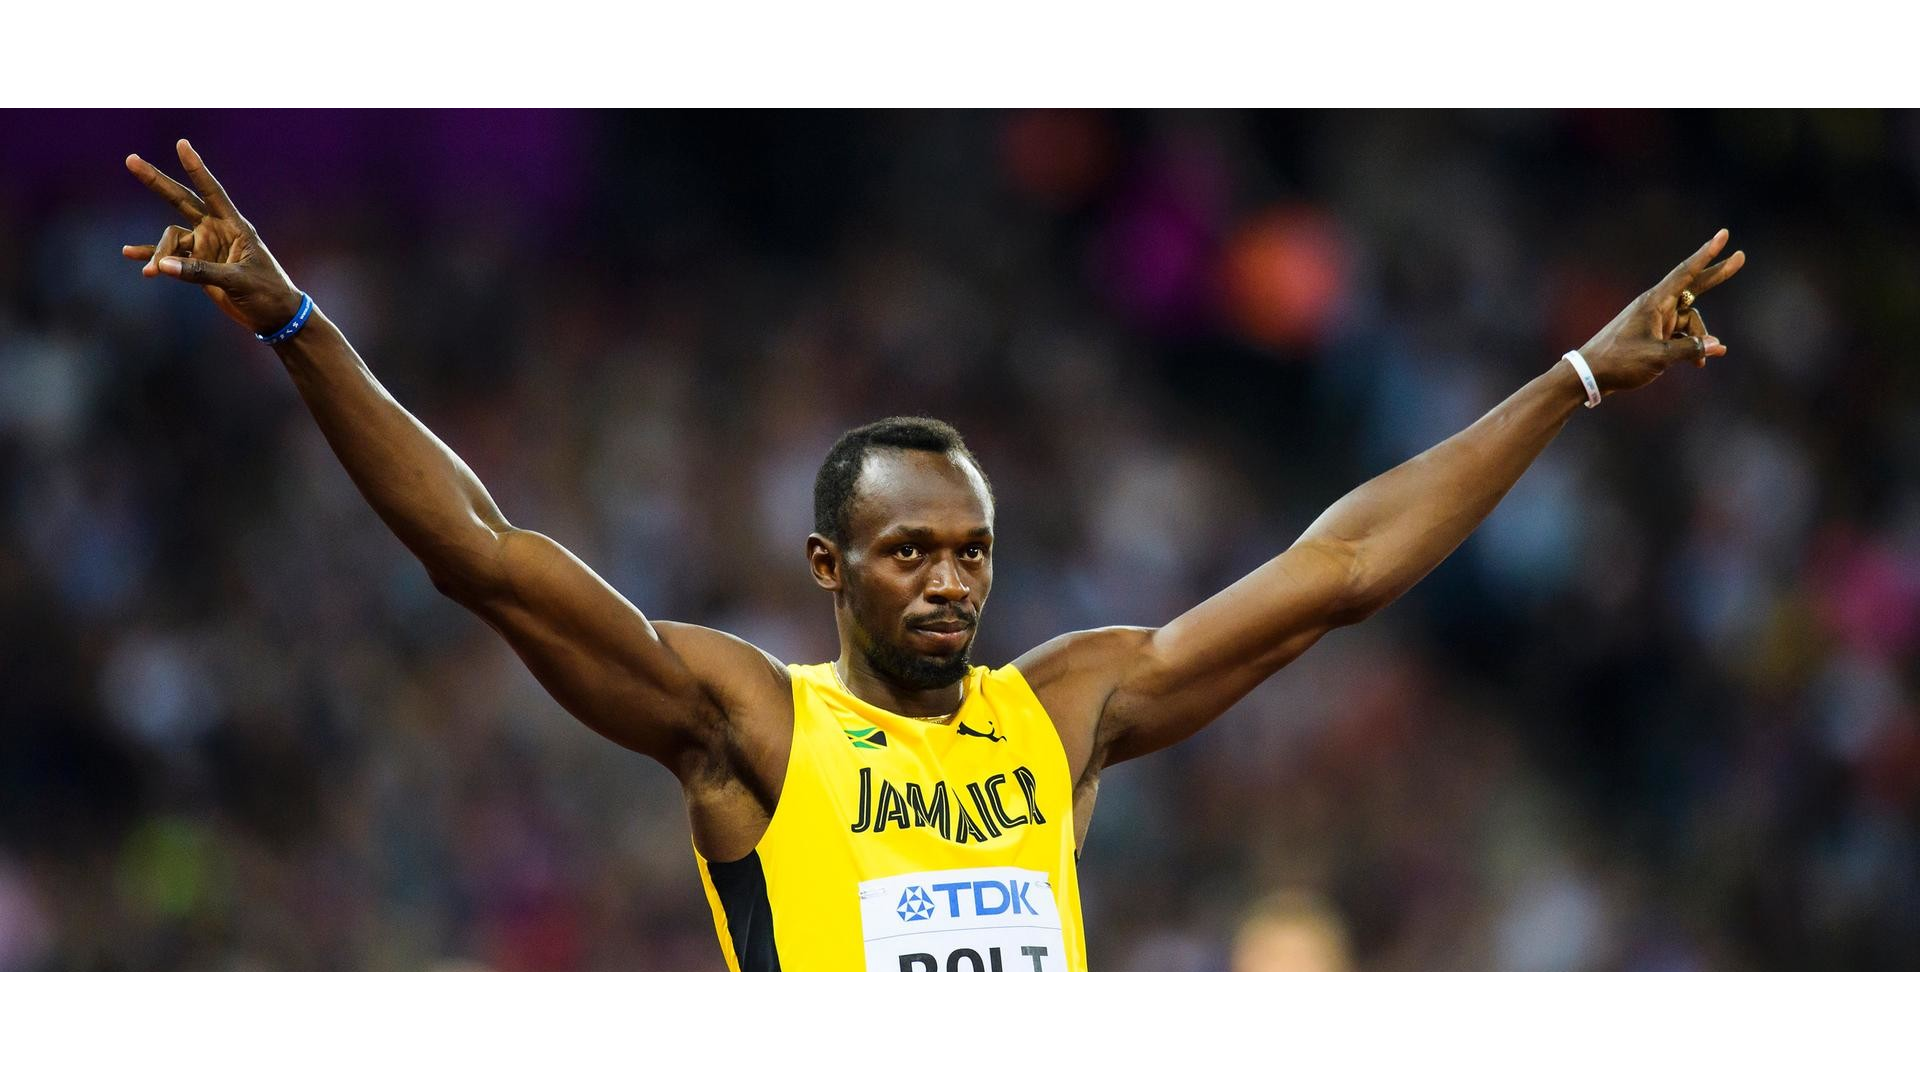 Sporda kuvvet türleri arasında yer alan maksimal kuvvetin efsanesi Usain Bolt'a ait görsel.